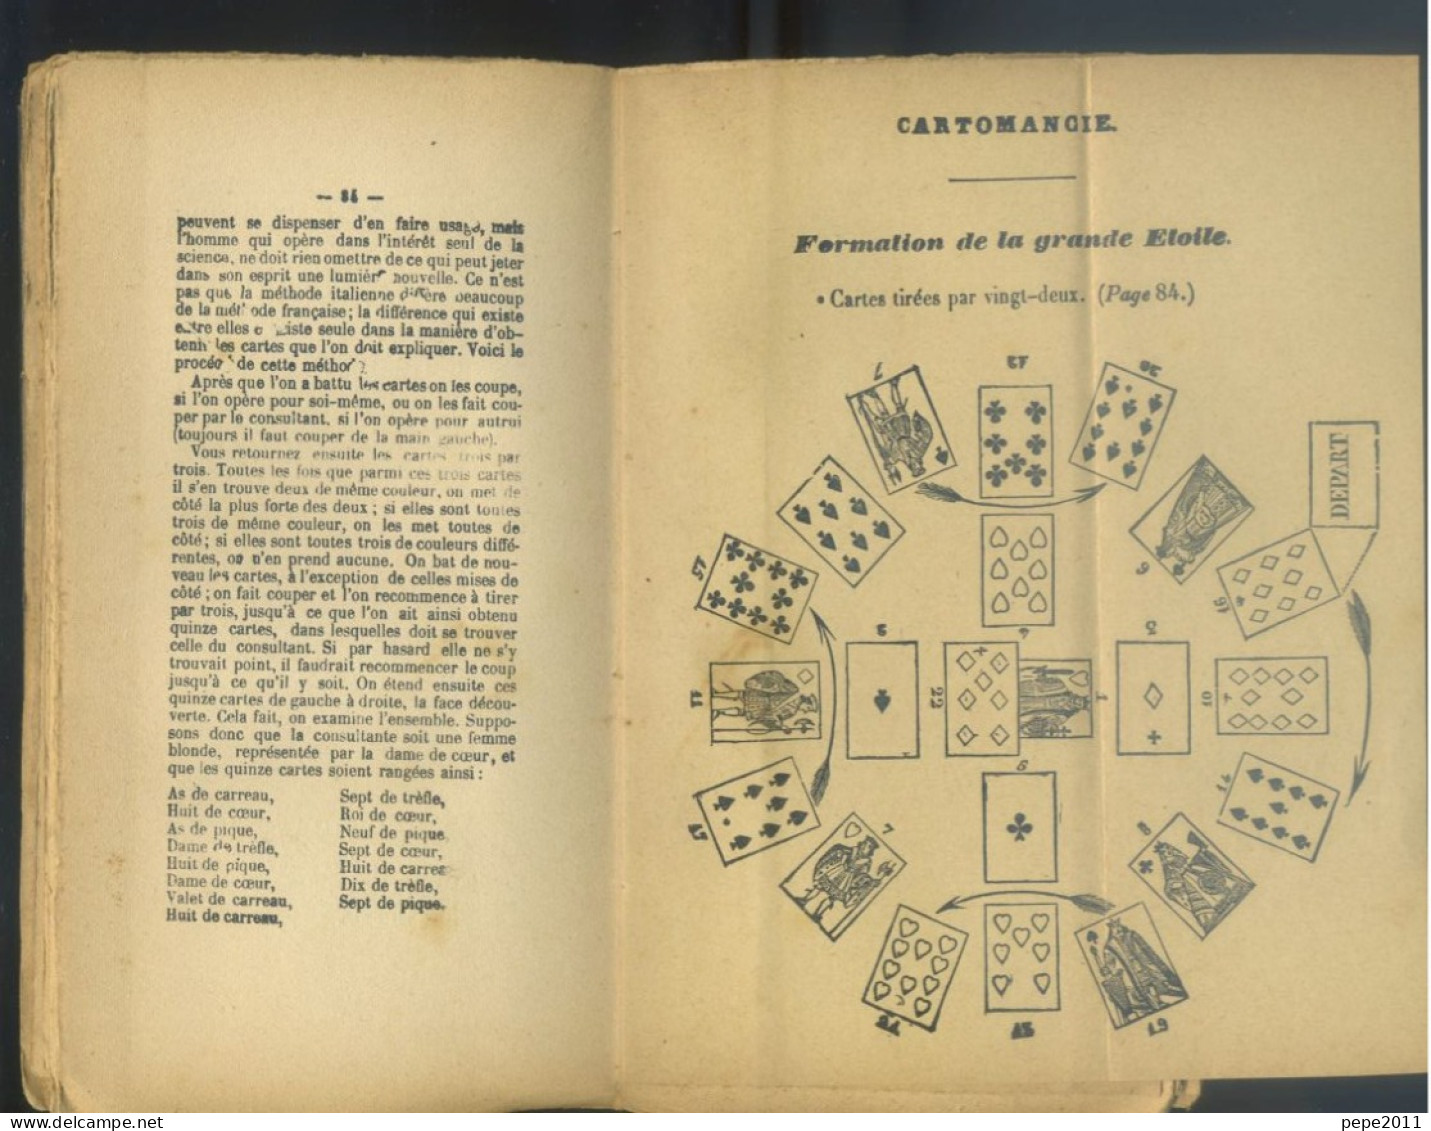 Rare Traité de CARTOMANCIE Art de Tirer les Cartes, Horoscopes, Chiromancie, Cranoscopie (Phénologie) - HABERT d'Angers